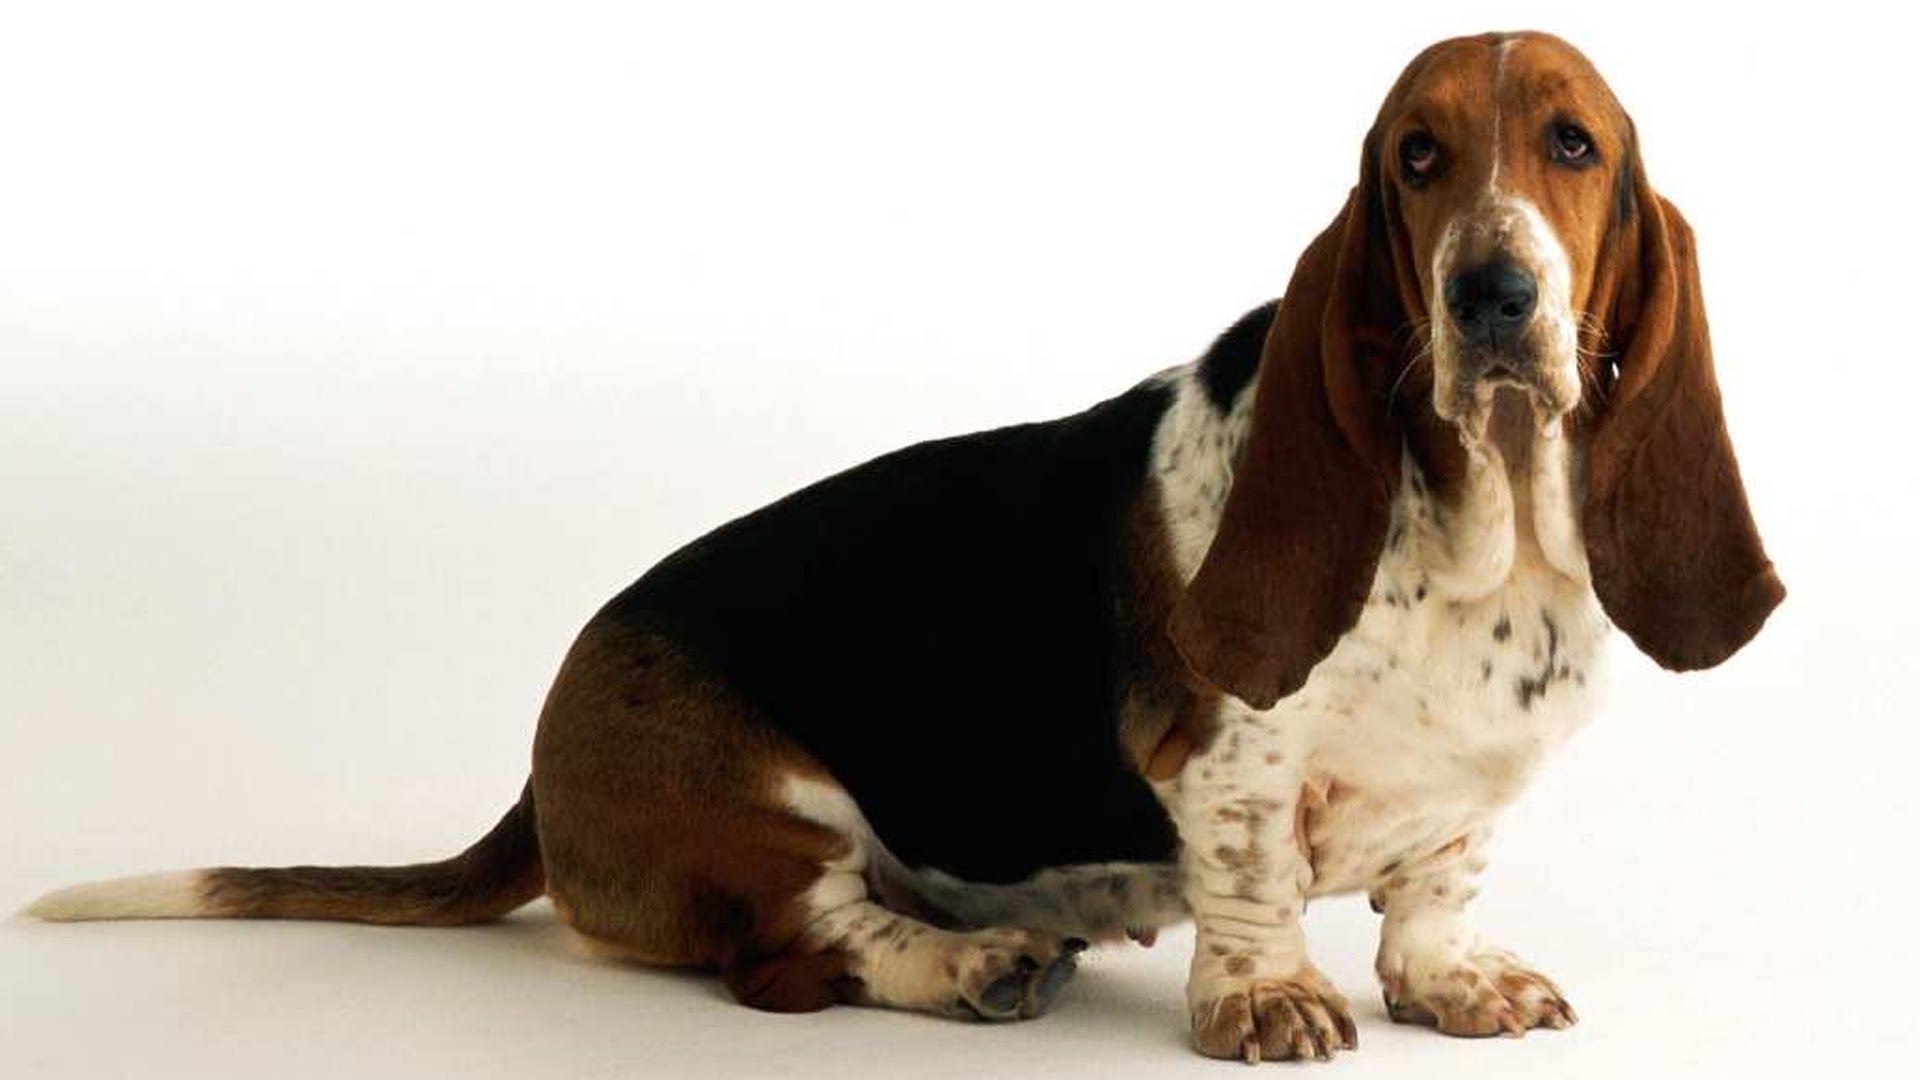 Длинные уши на английском. Собака Коломбо порода Бассет. Ушастый Бассет-хаунд. Бассет хаунд Коломбо. Собака Коломбо порода Бассет хаунд.